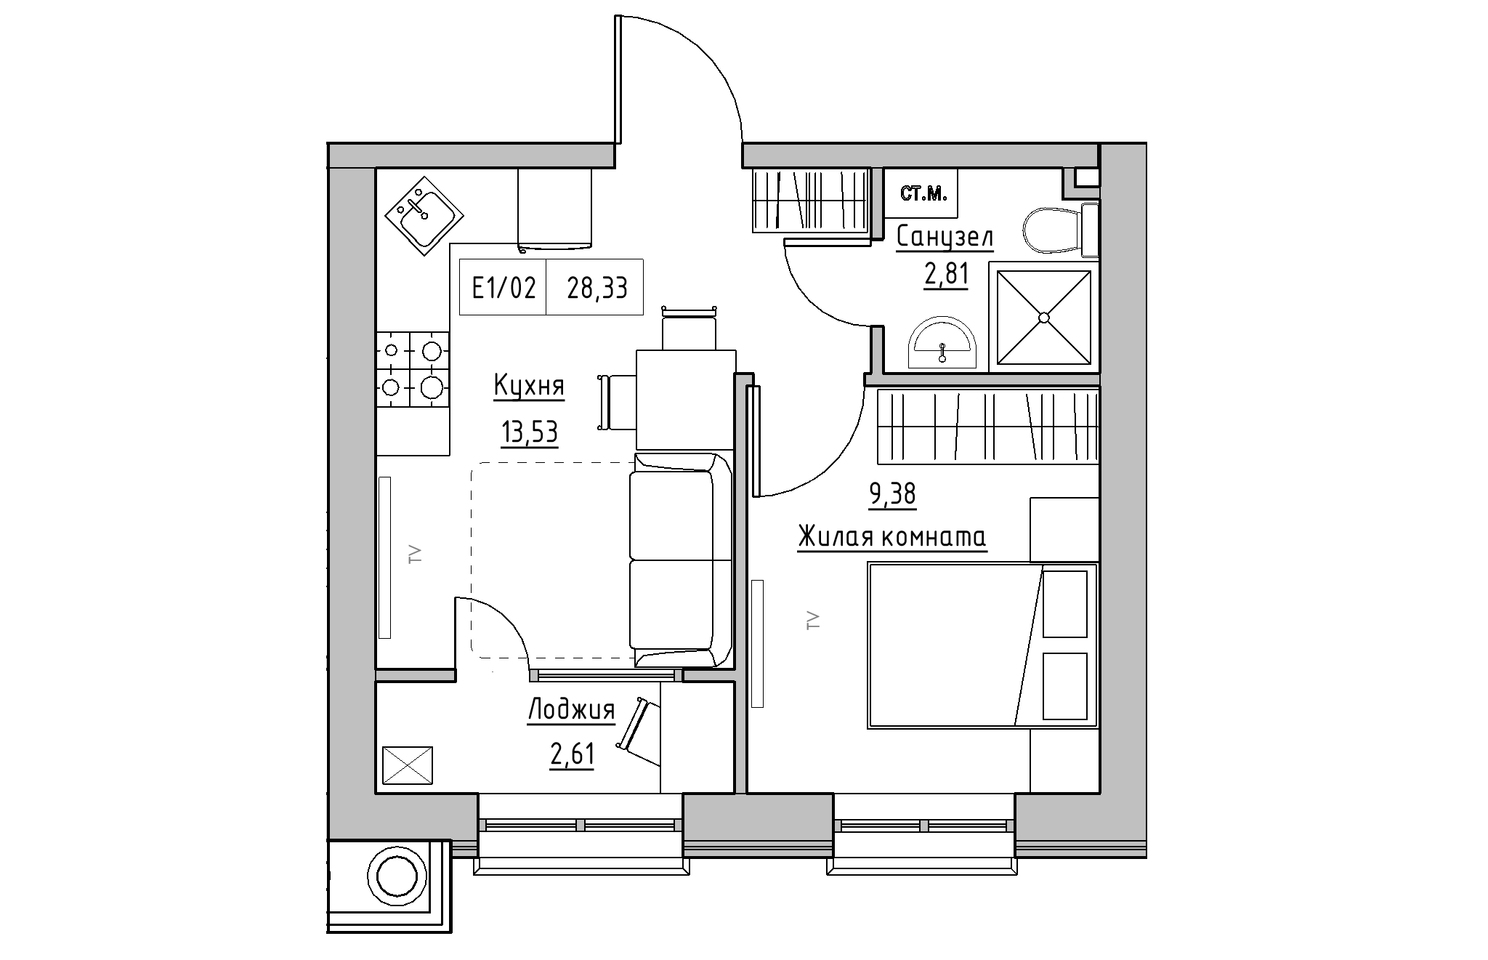 Планування 1-к квартира площею 28.33м2, KS-010-05/0001.